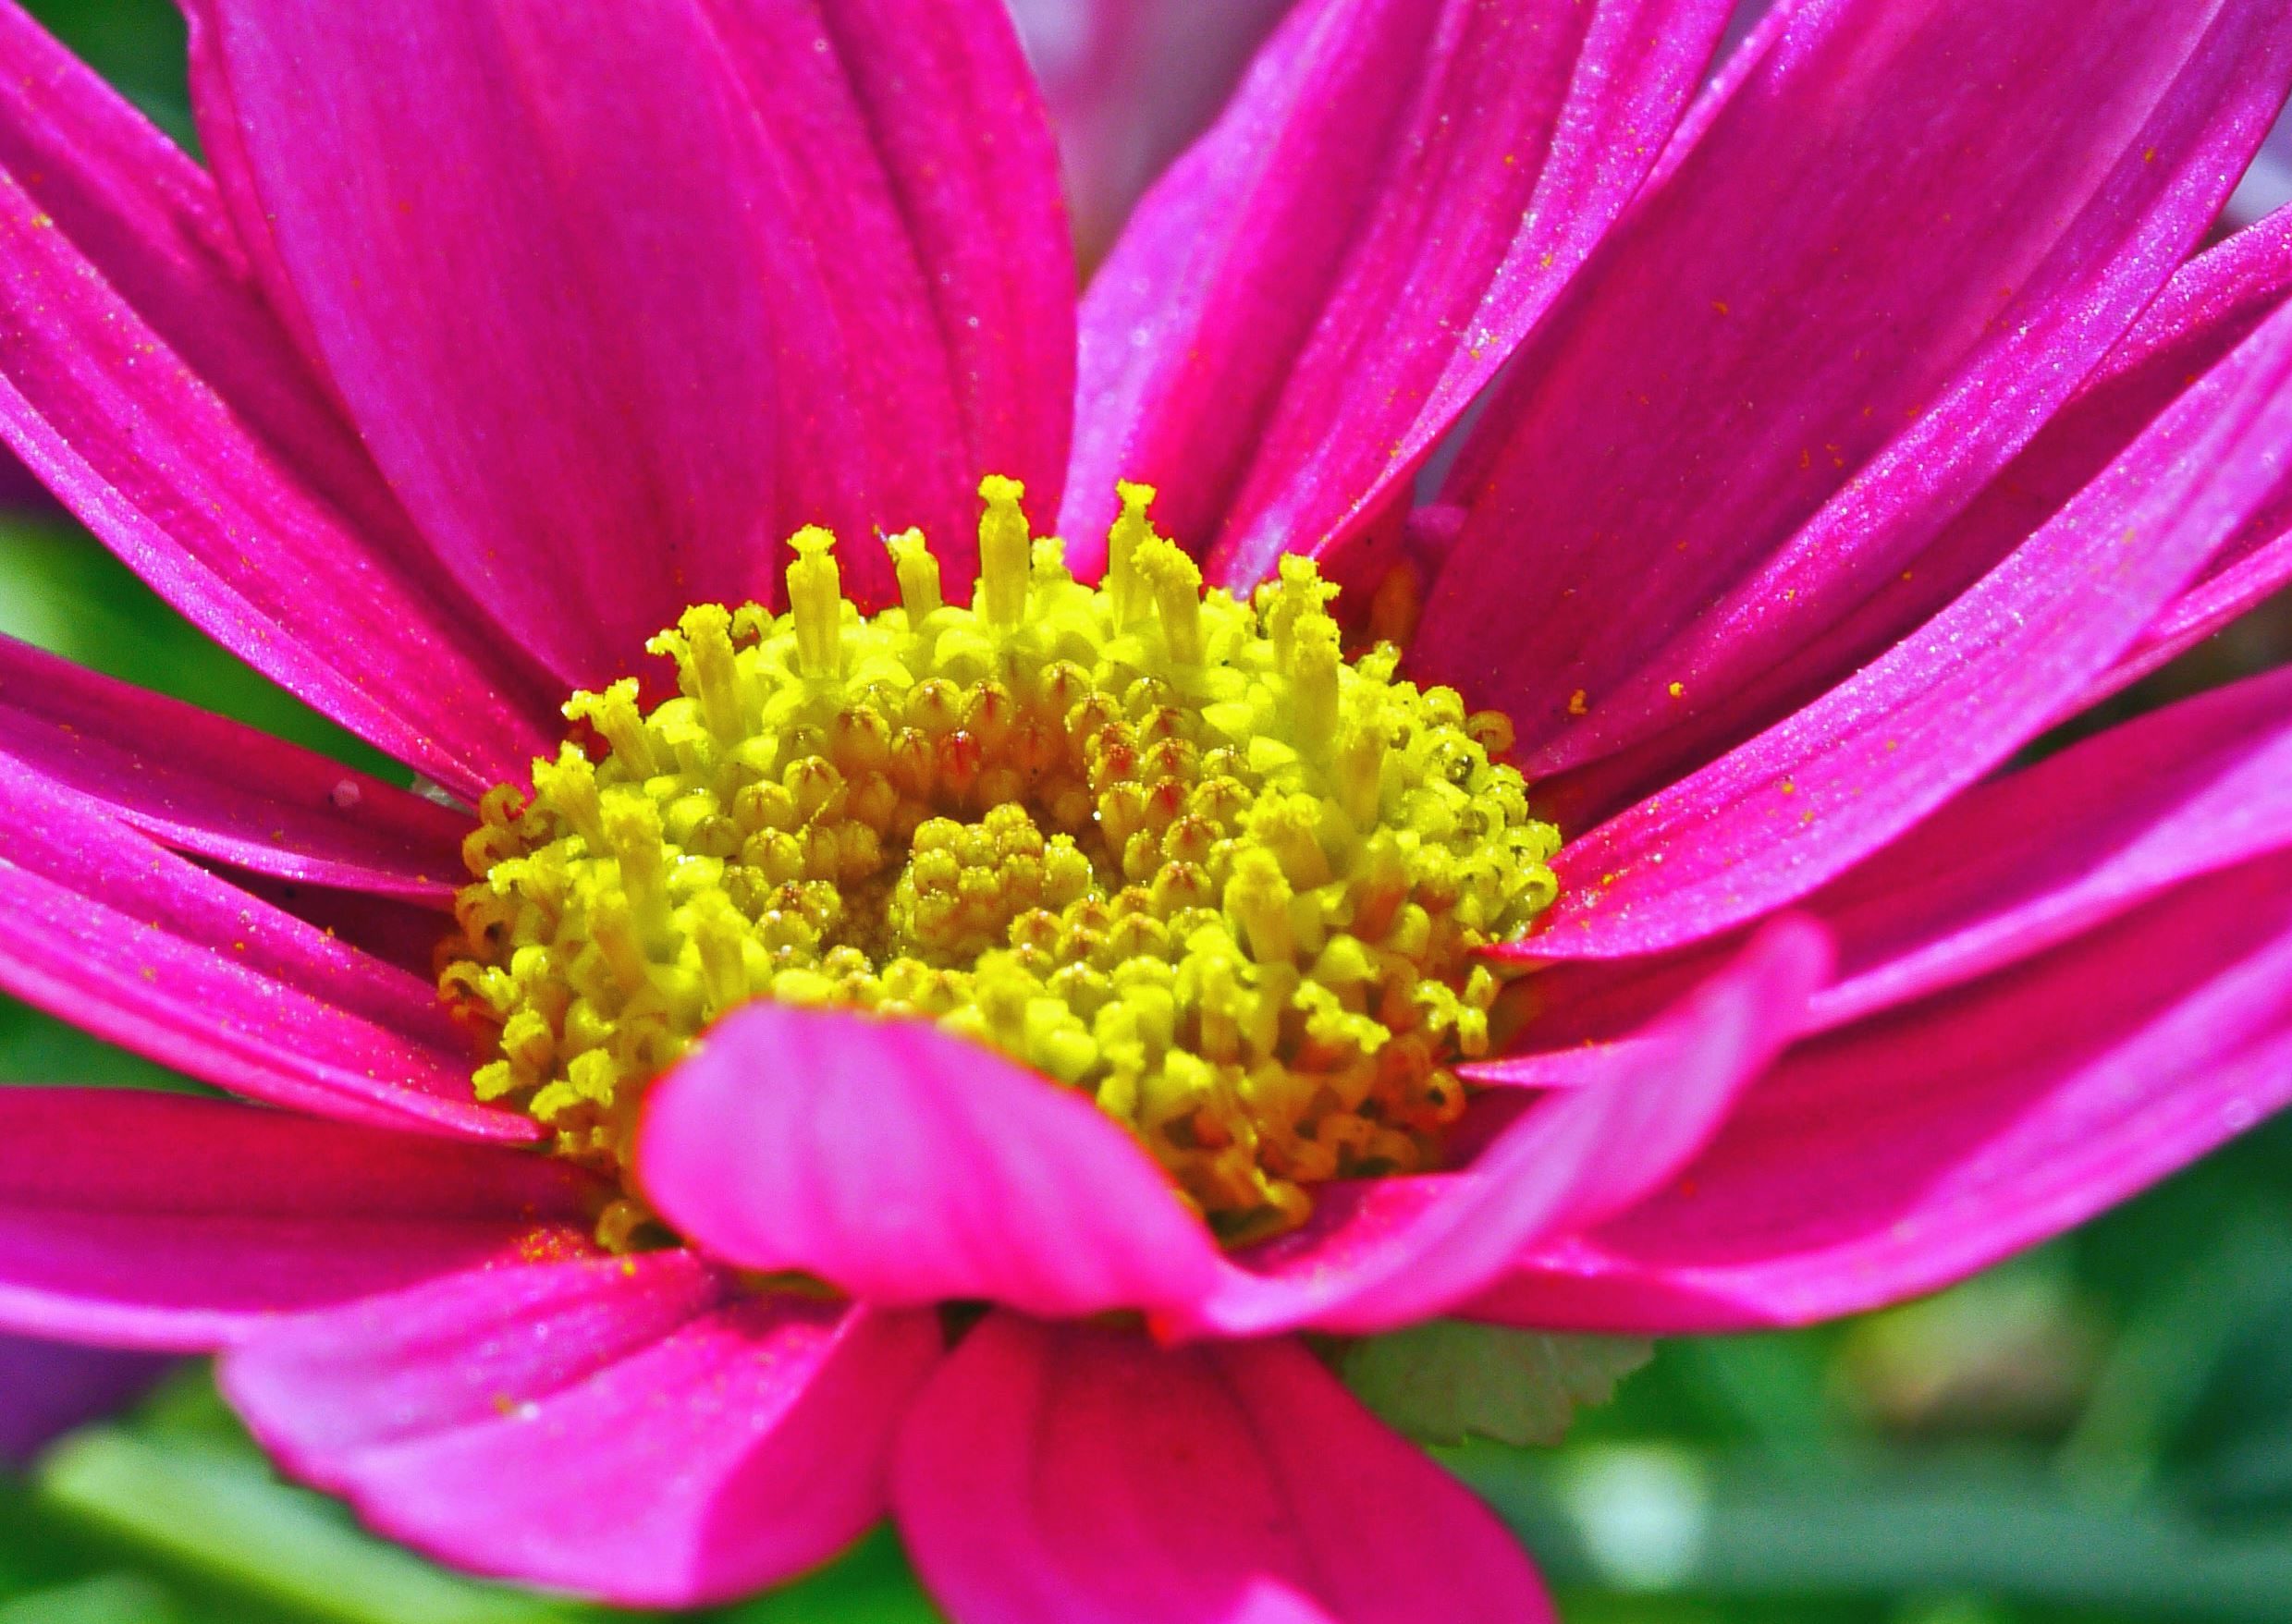  Image  libre Pollen nectar plante  fleur  p tale jardin 